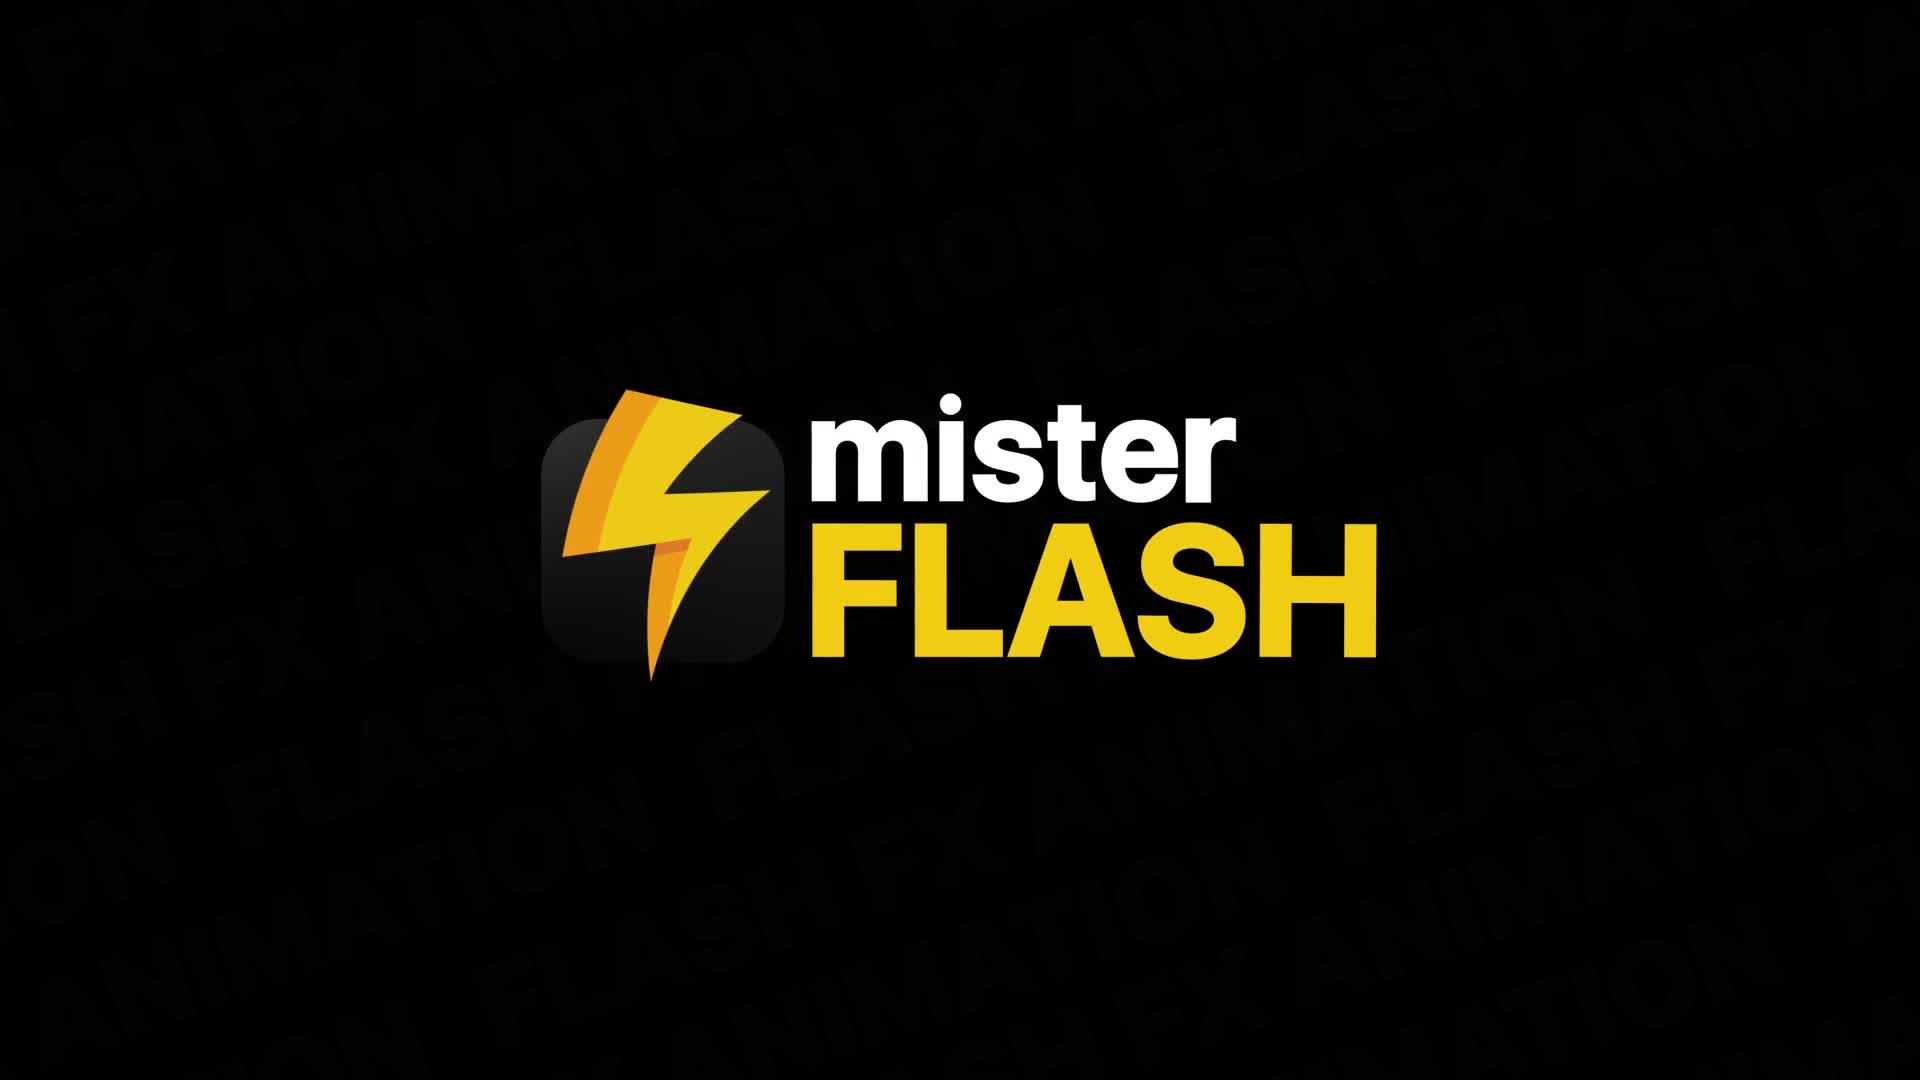 Flash FX Elements Pack 07 | Premiere Pro MOGRT Videohive 26203458 Premiere Pro Image 1